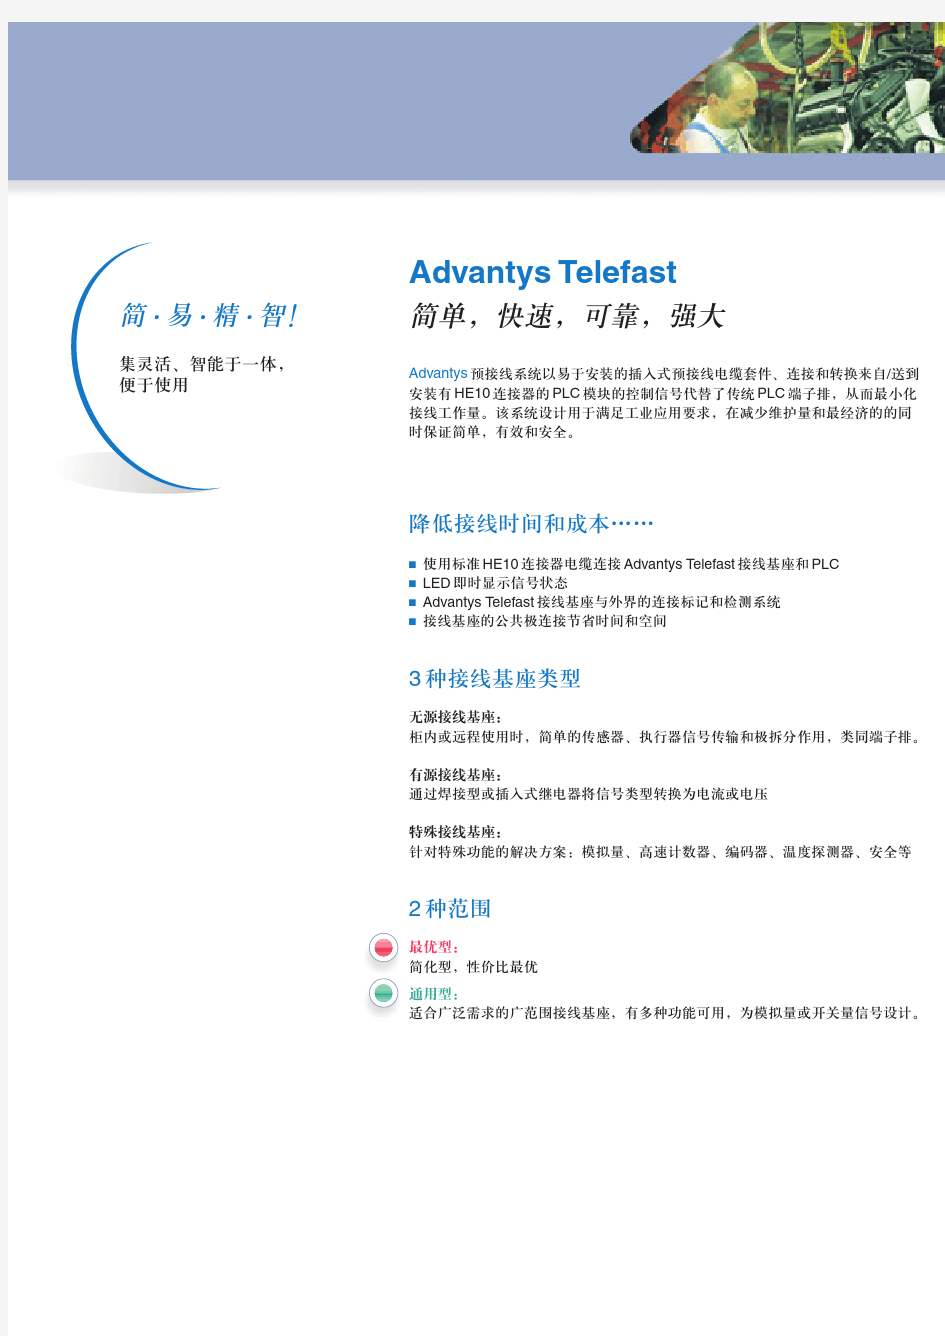 预接线系统 Advantys Telefast ABE7 简化接线